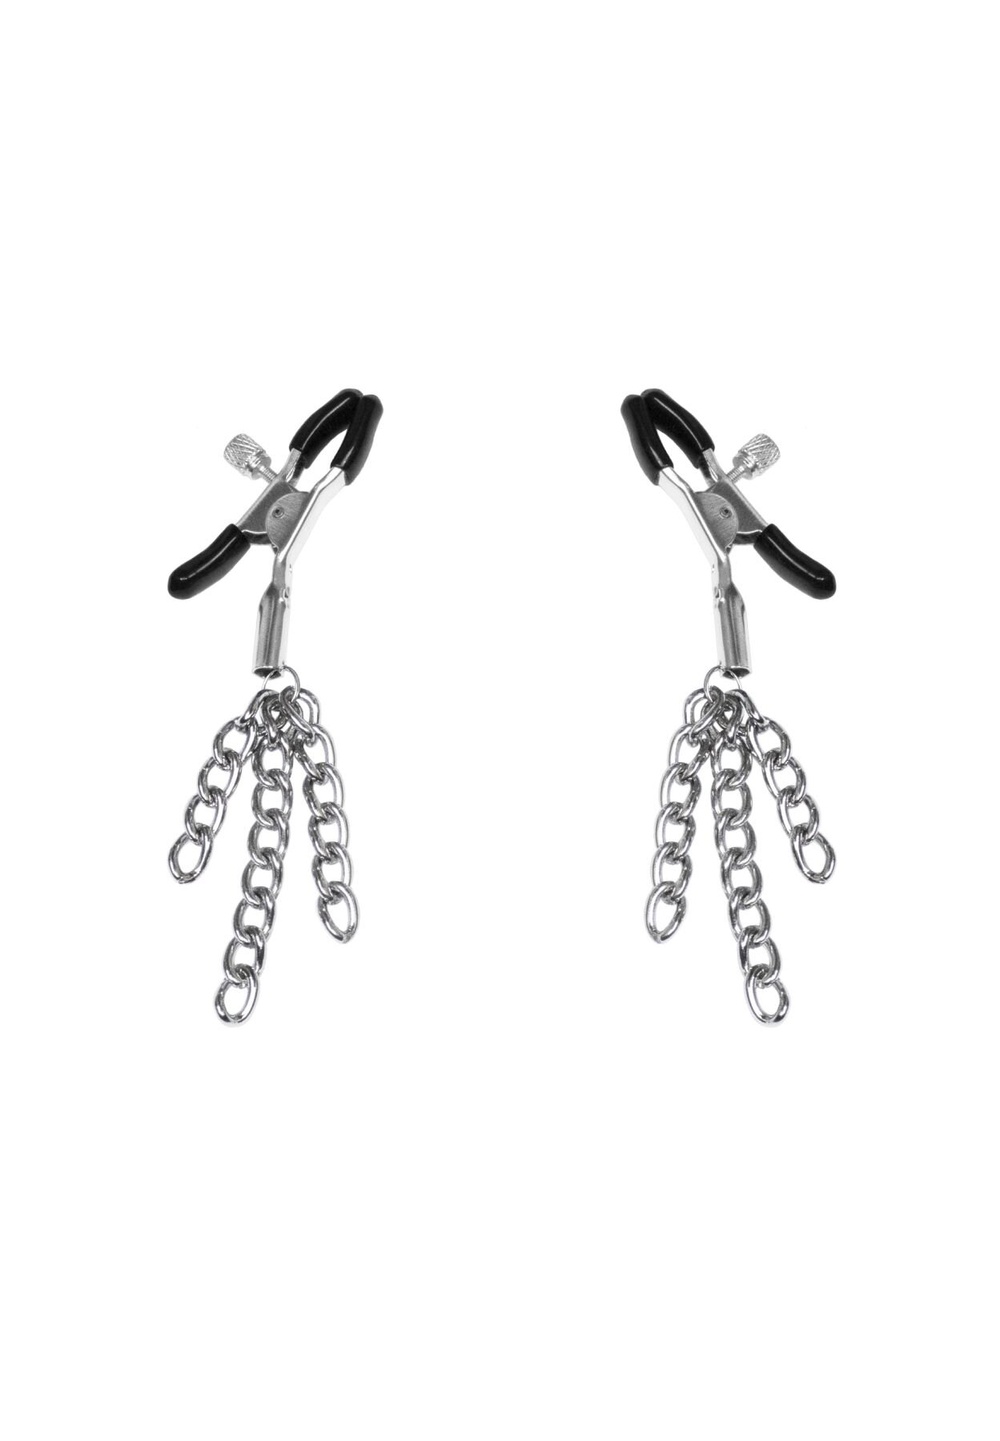 Зажимы для сосков с кисточками Feral Feelings - Nipple clamps Tassels, серебро/черный фото